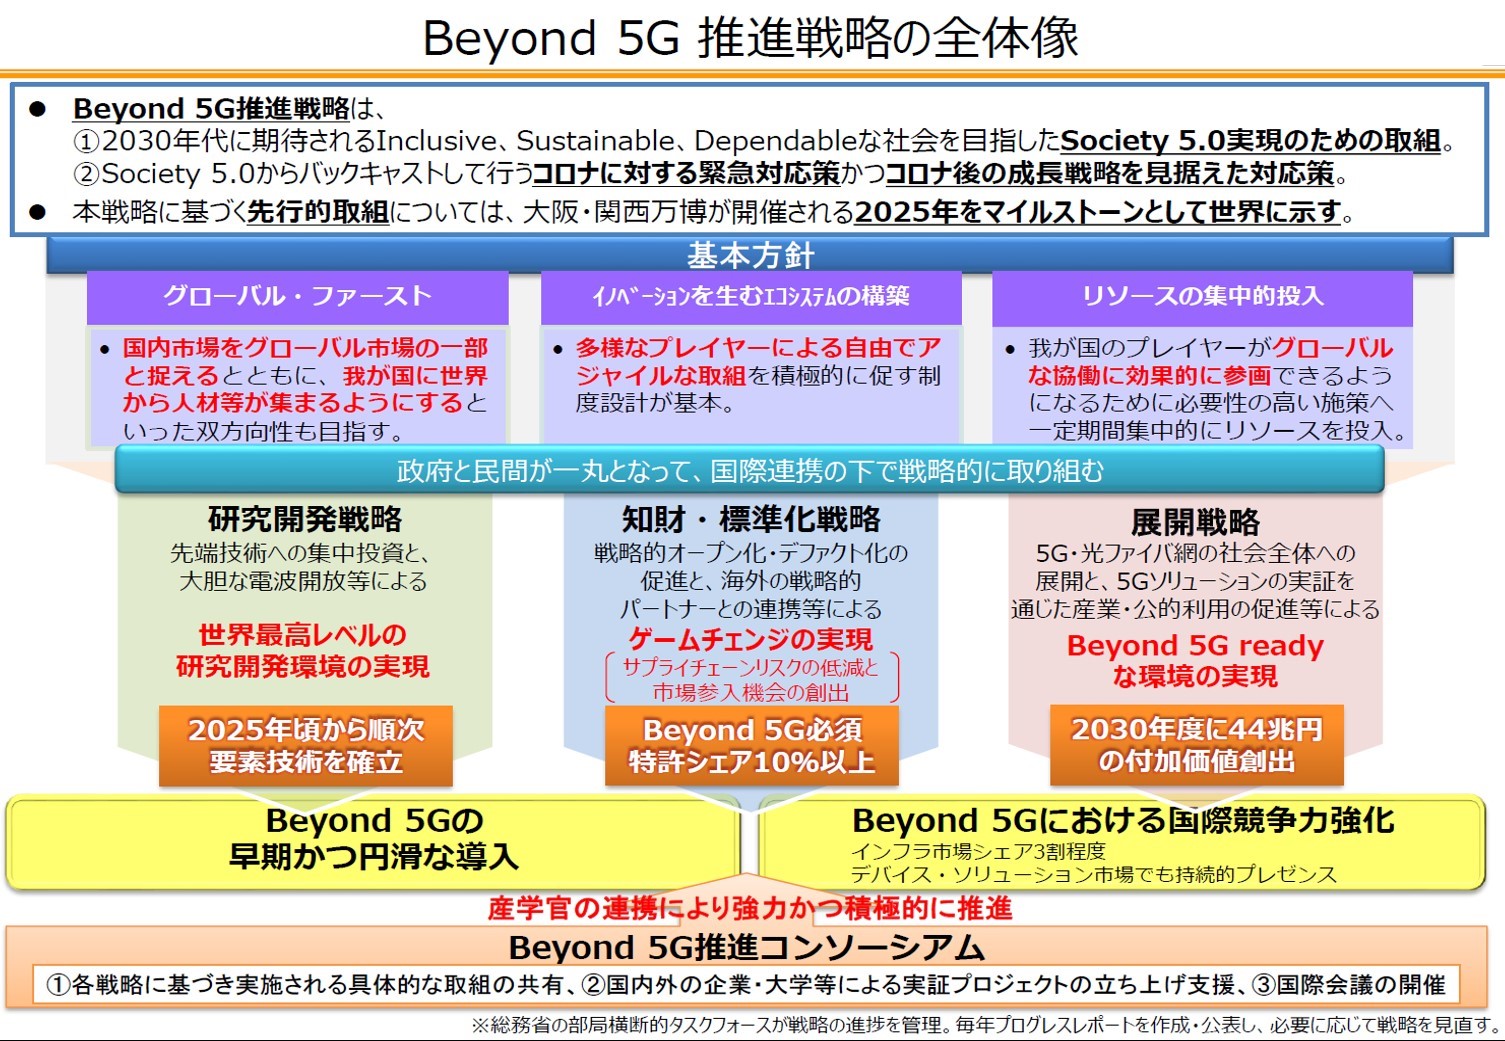 Beyond 5G 推進戦略の全体像